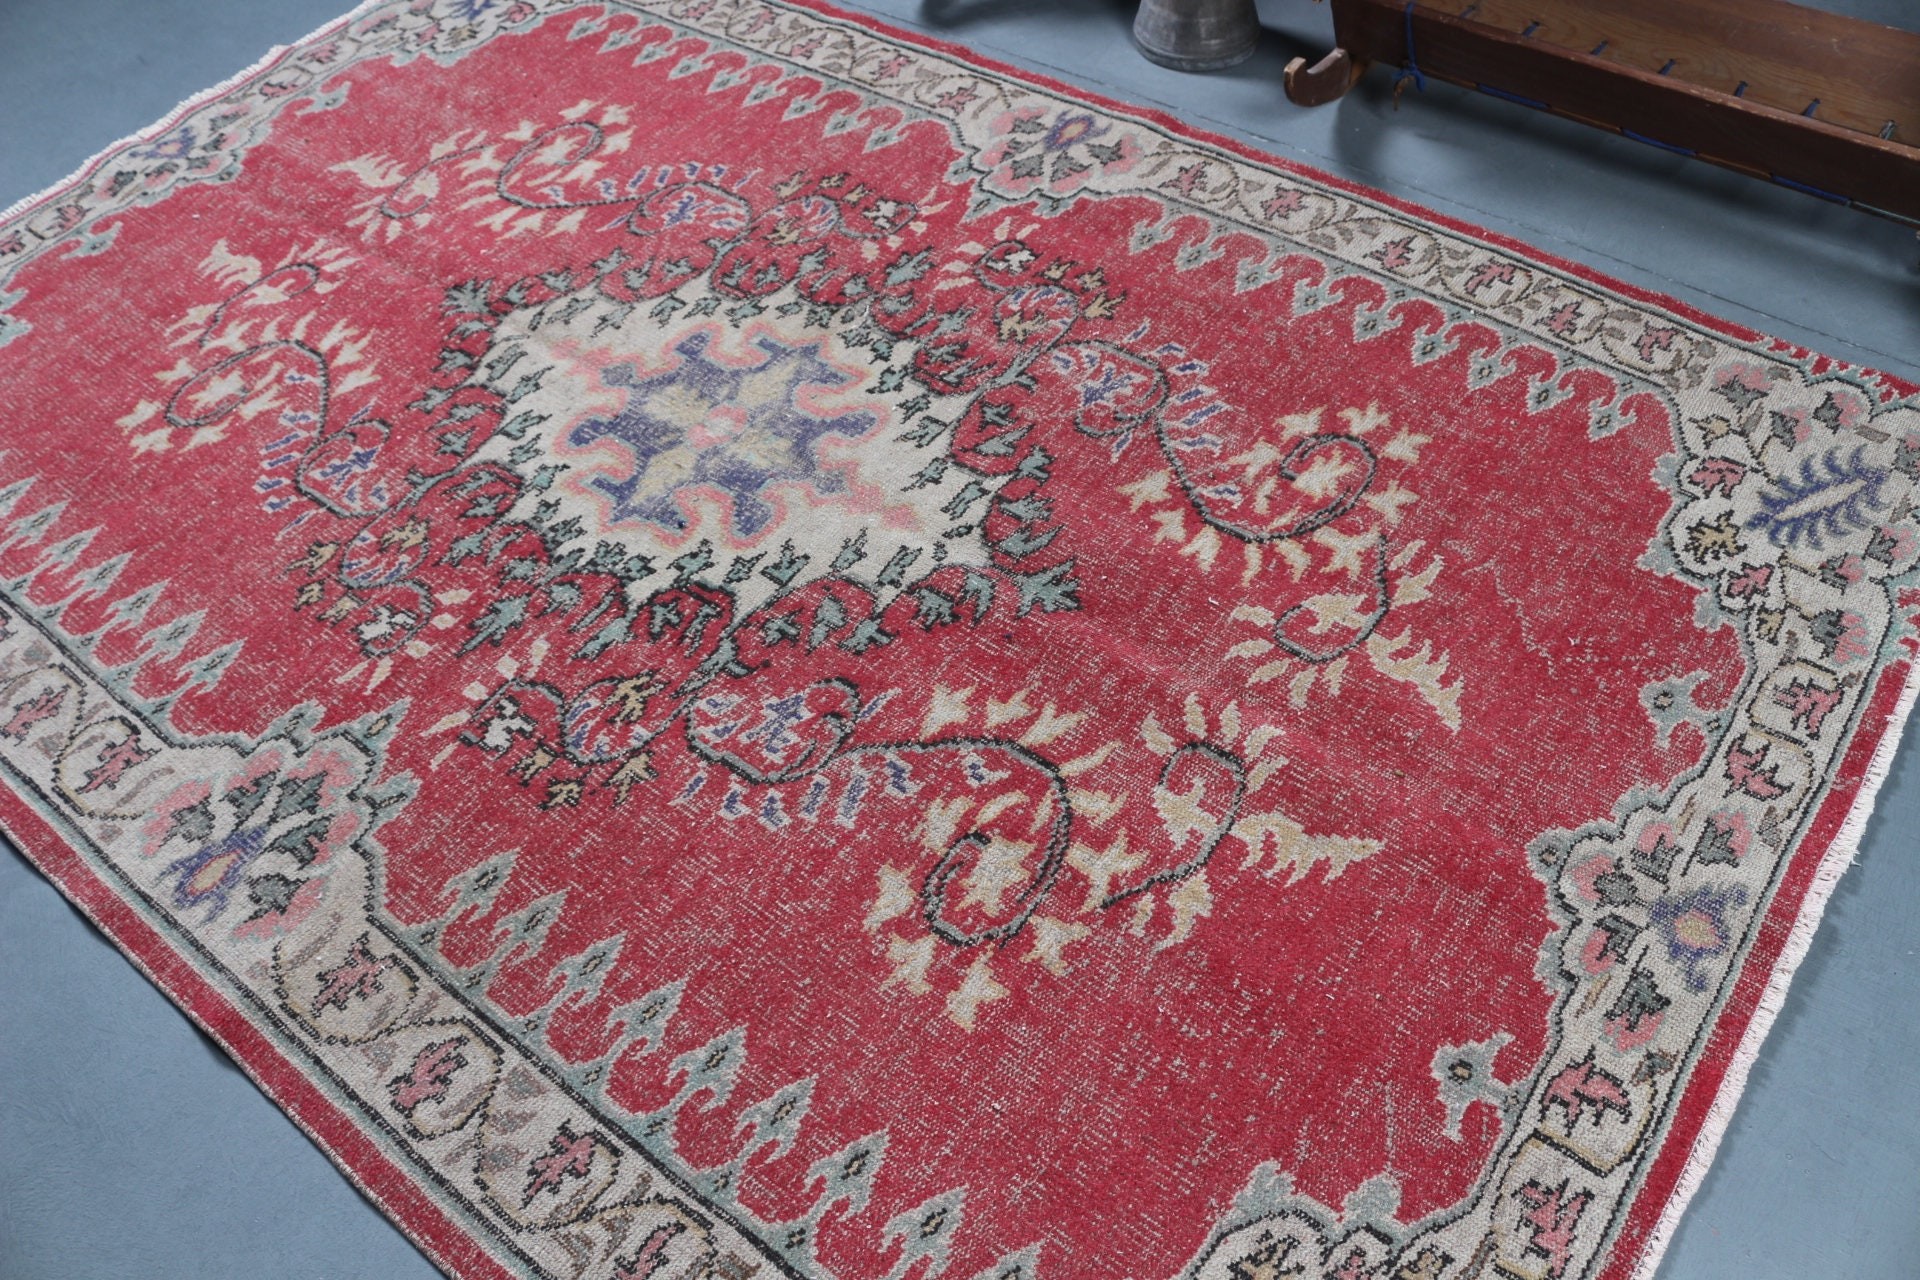 Turkish Rugs, Pastel Rug, Floor Rug, Antique Rug, Vintage Rug, 5.7x8.5 ft Large Rug, Red Home Decor Rug, Dining Room Rug, Living Room Rug